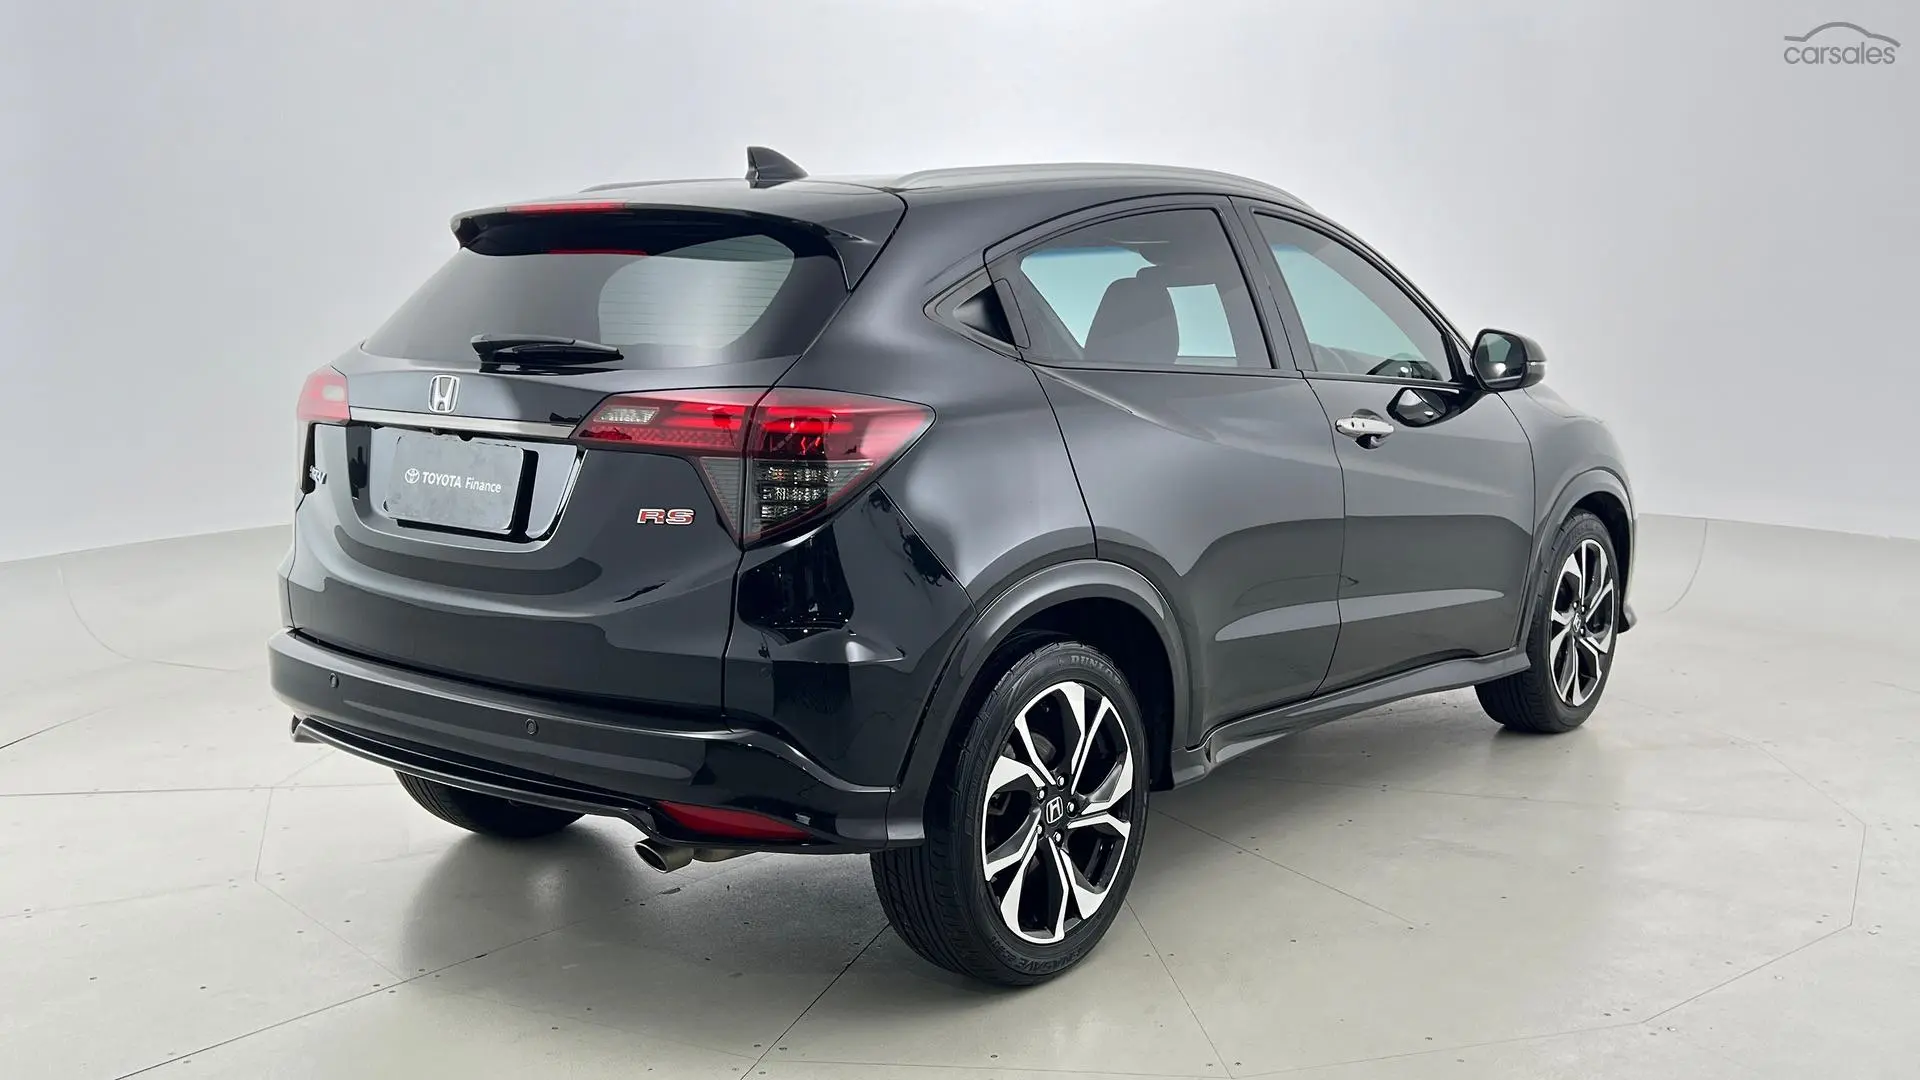 2019 Honda HR-V Image 4